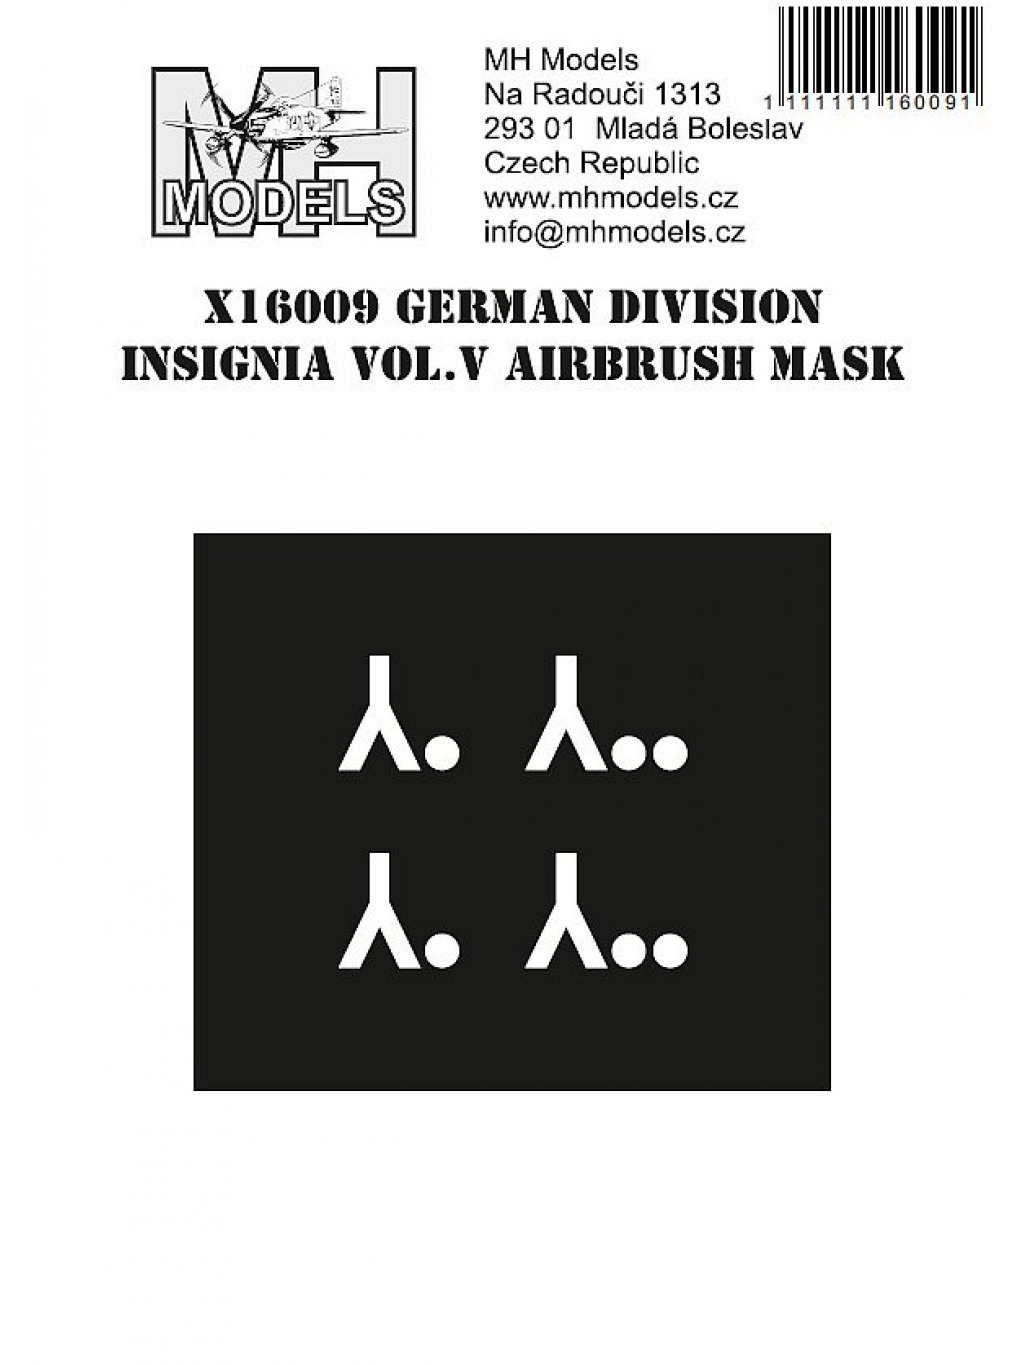 German division insignia vol.V airbrush mask